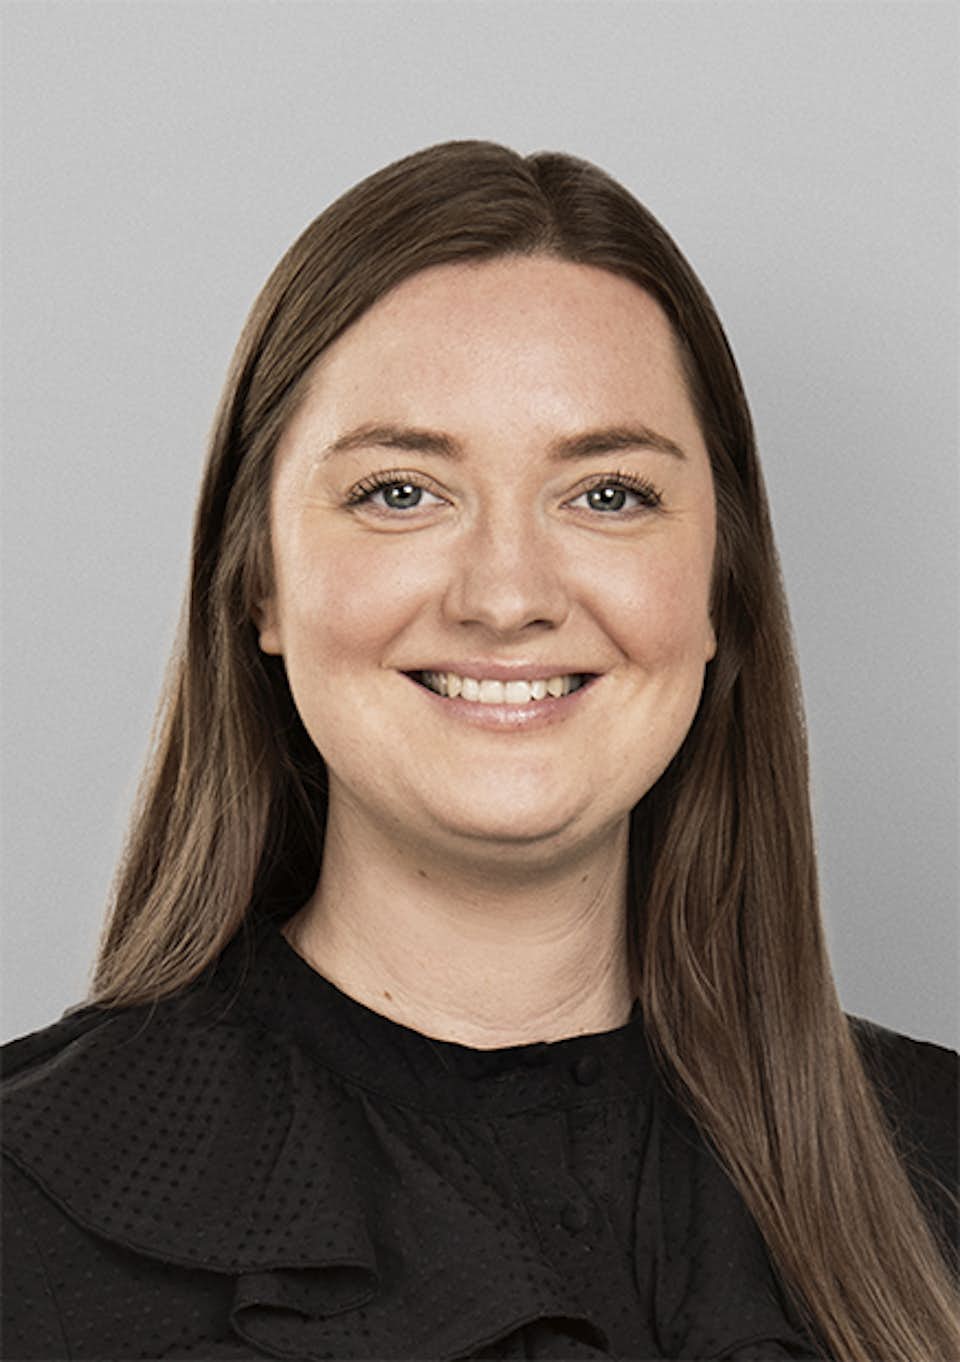 Natalie Gjerstad NGJ